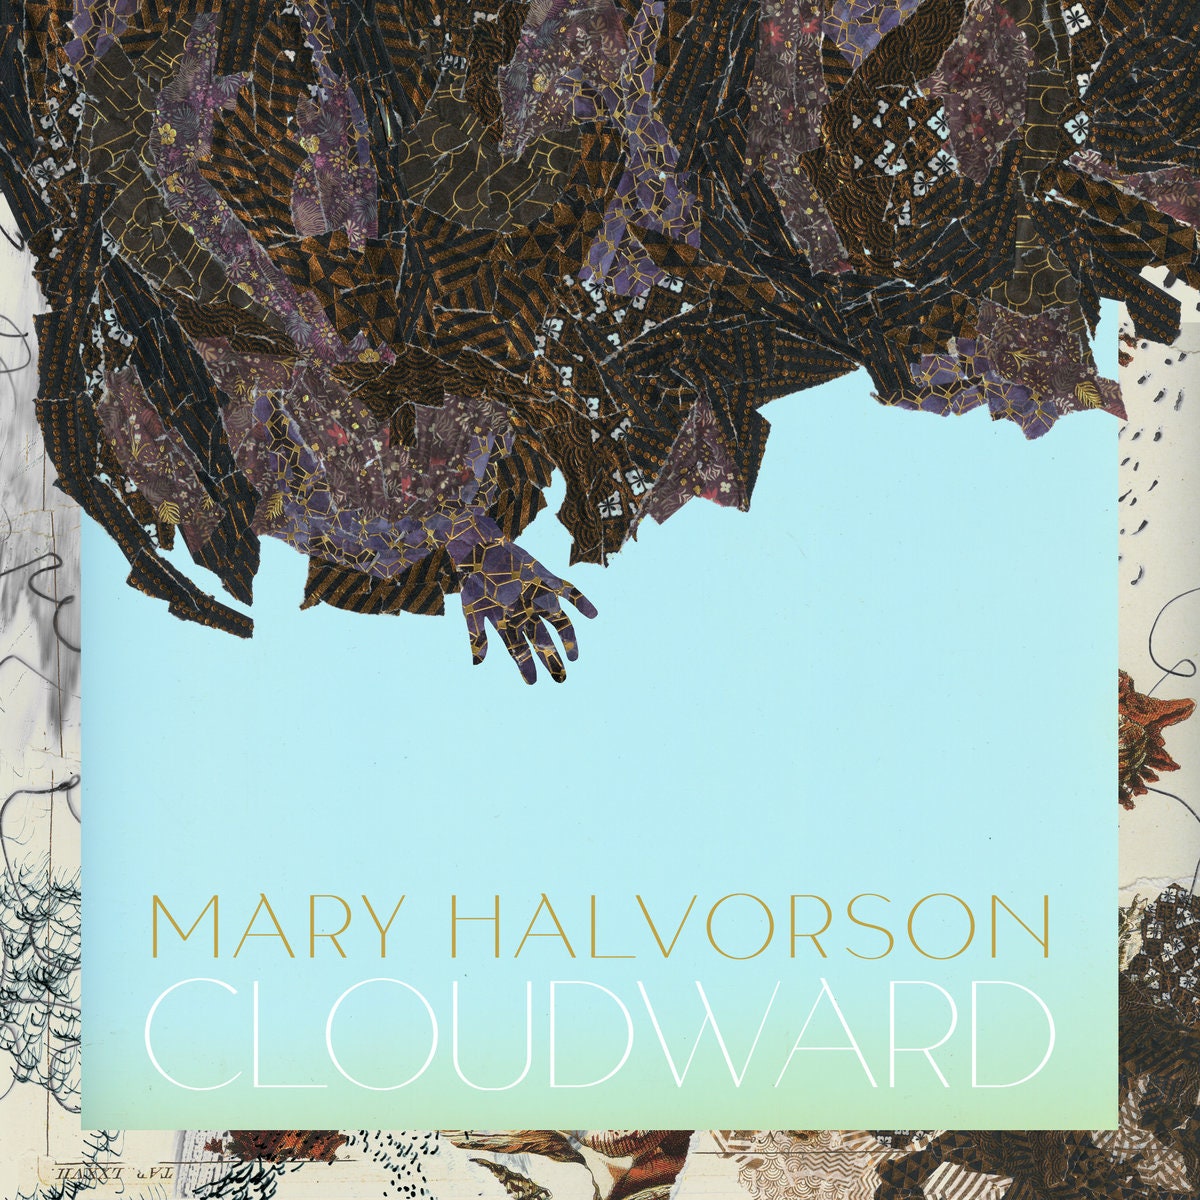 Mary Halvorson: Cloudward